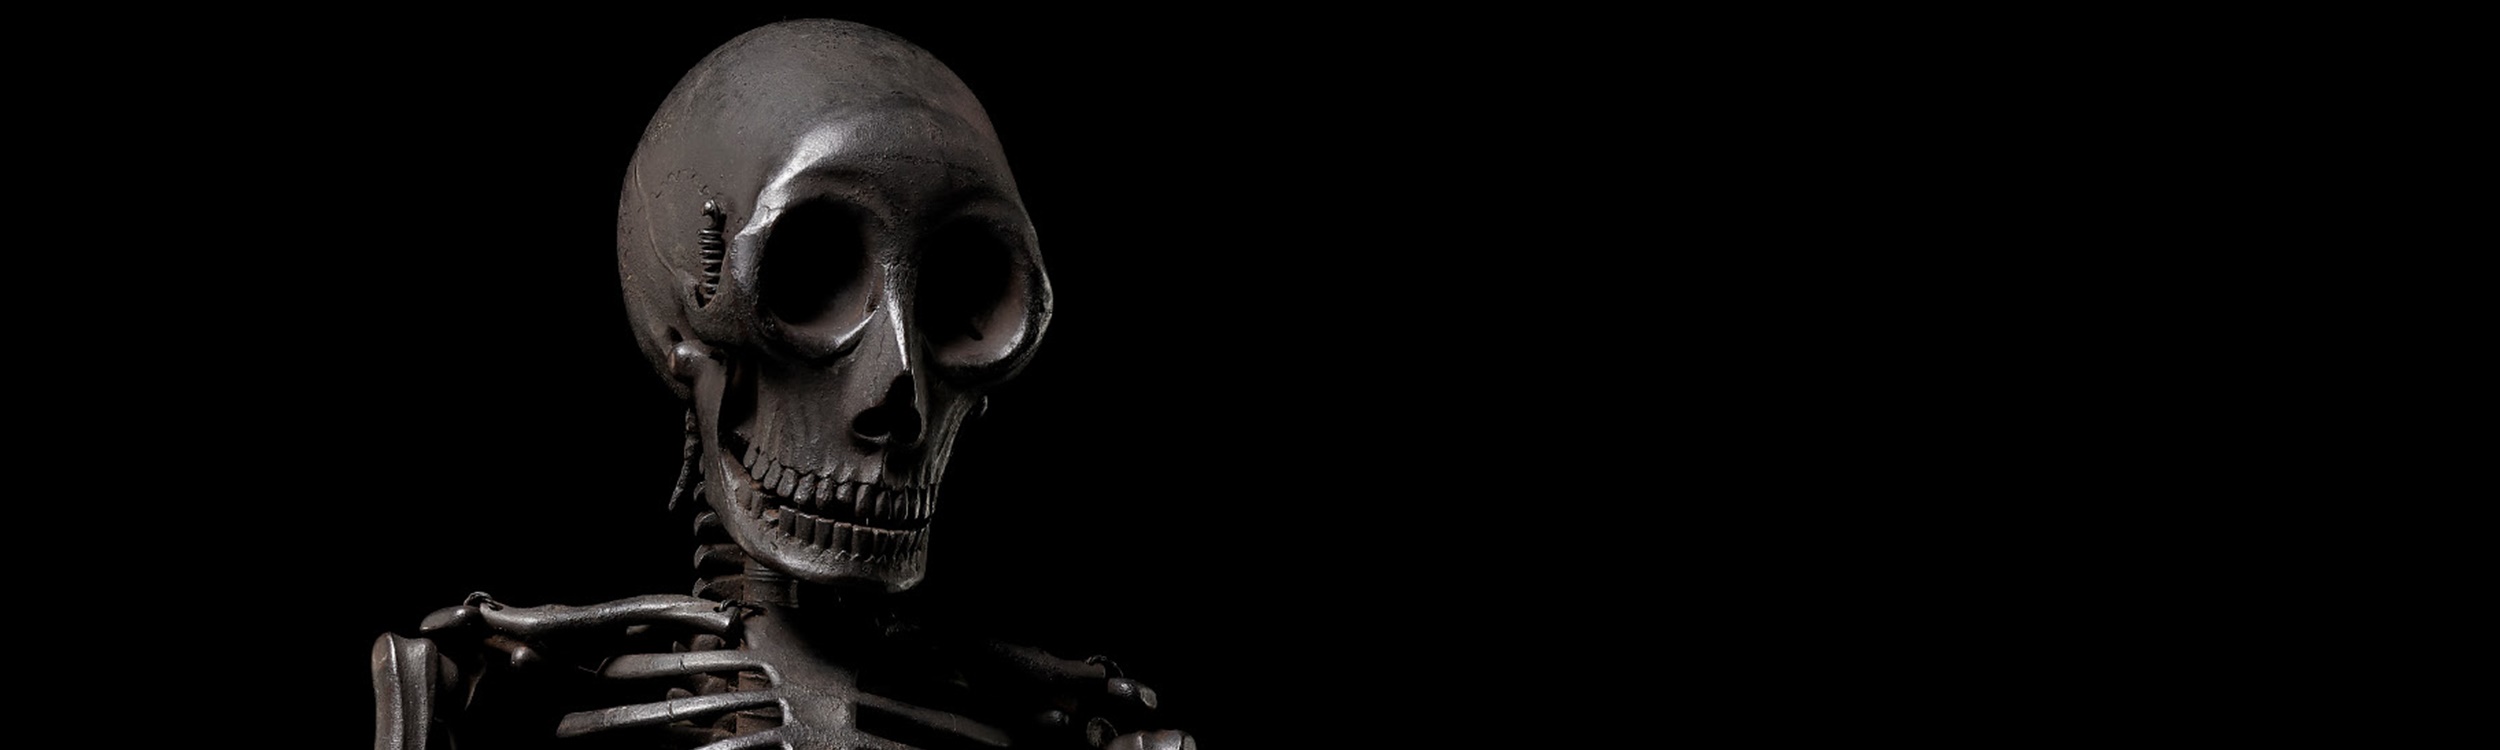 Watch Now: An Important Jizai Okimono of a Skeleton